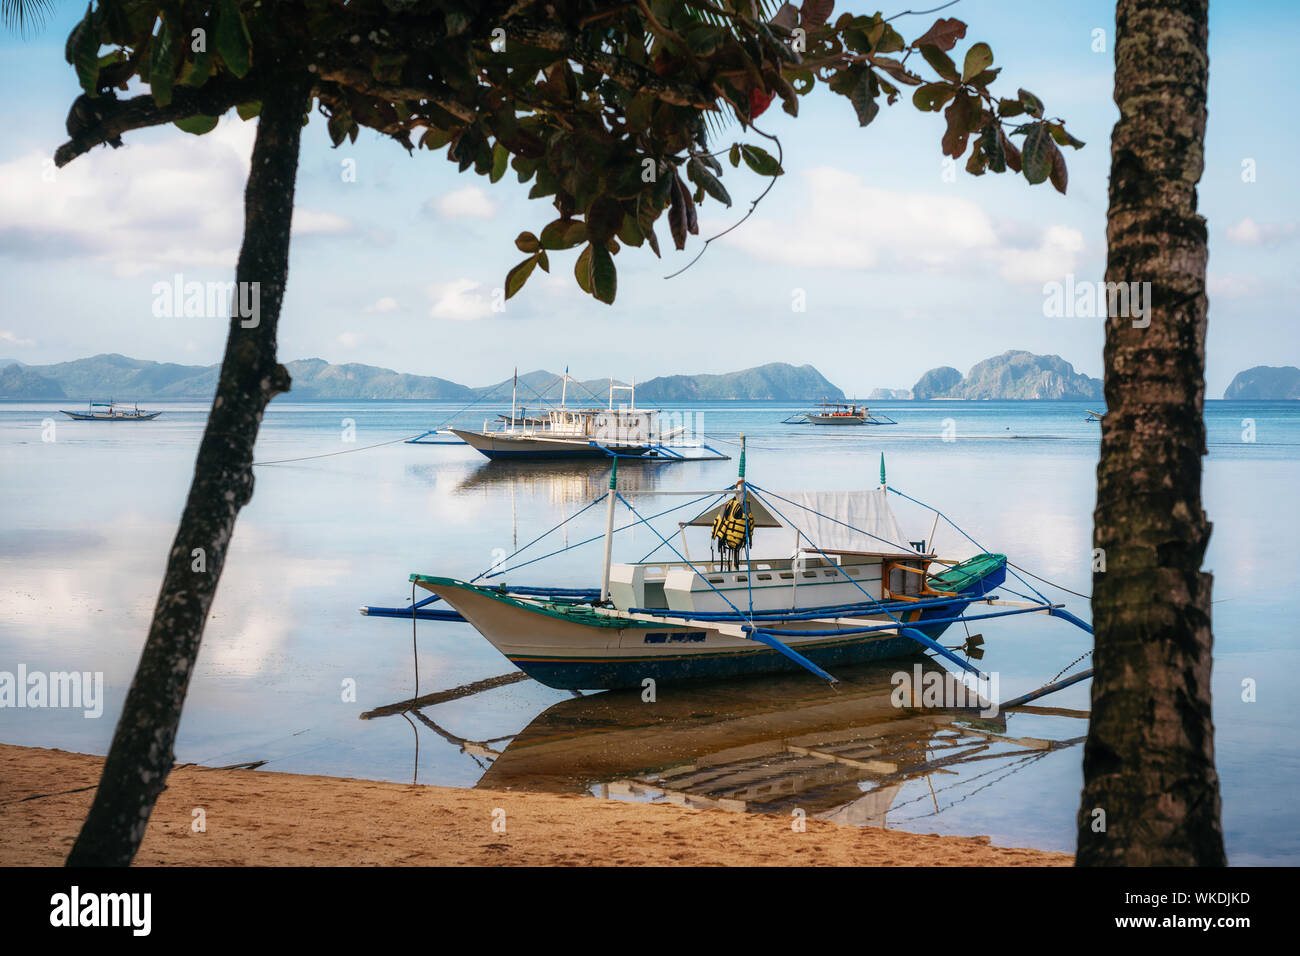 Small bangka boats on Corong Corong beach, El Nido, Philippines Stock Photo